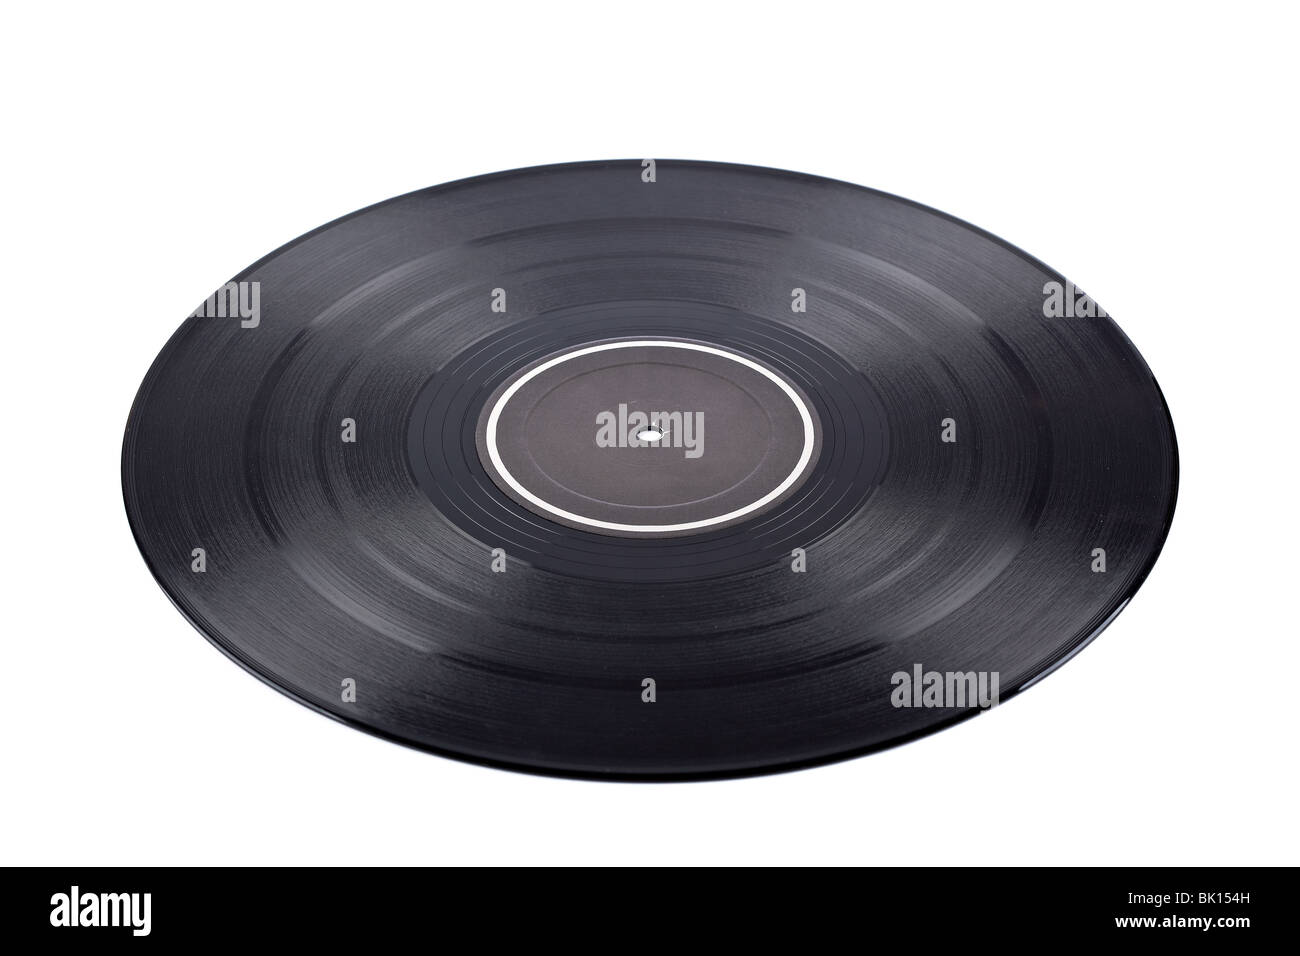 Staubige Vinyl-Platte mit schwarzem Etikett isoliert auf weißem Hintergrund. Geringe Schärfentiefe Stockfoto